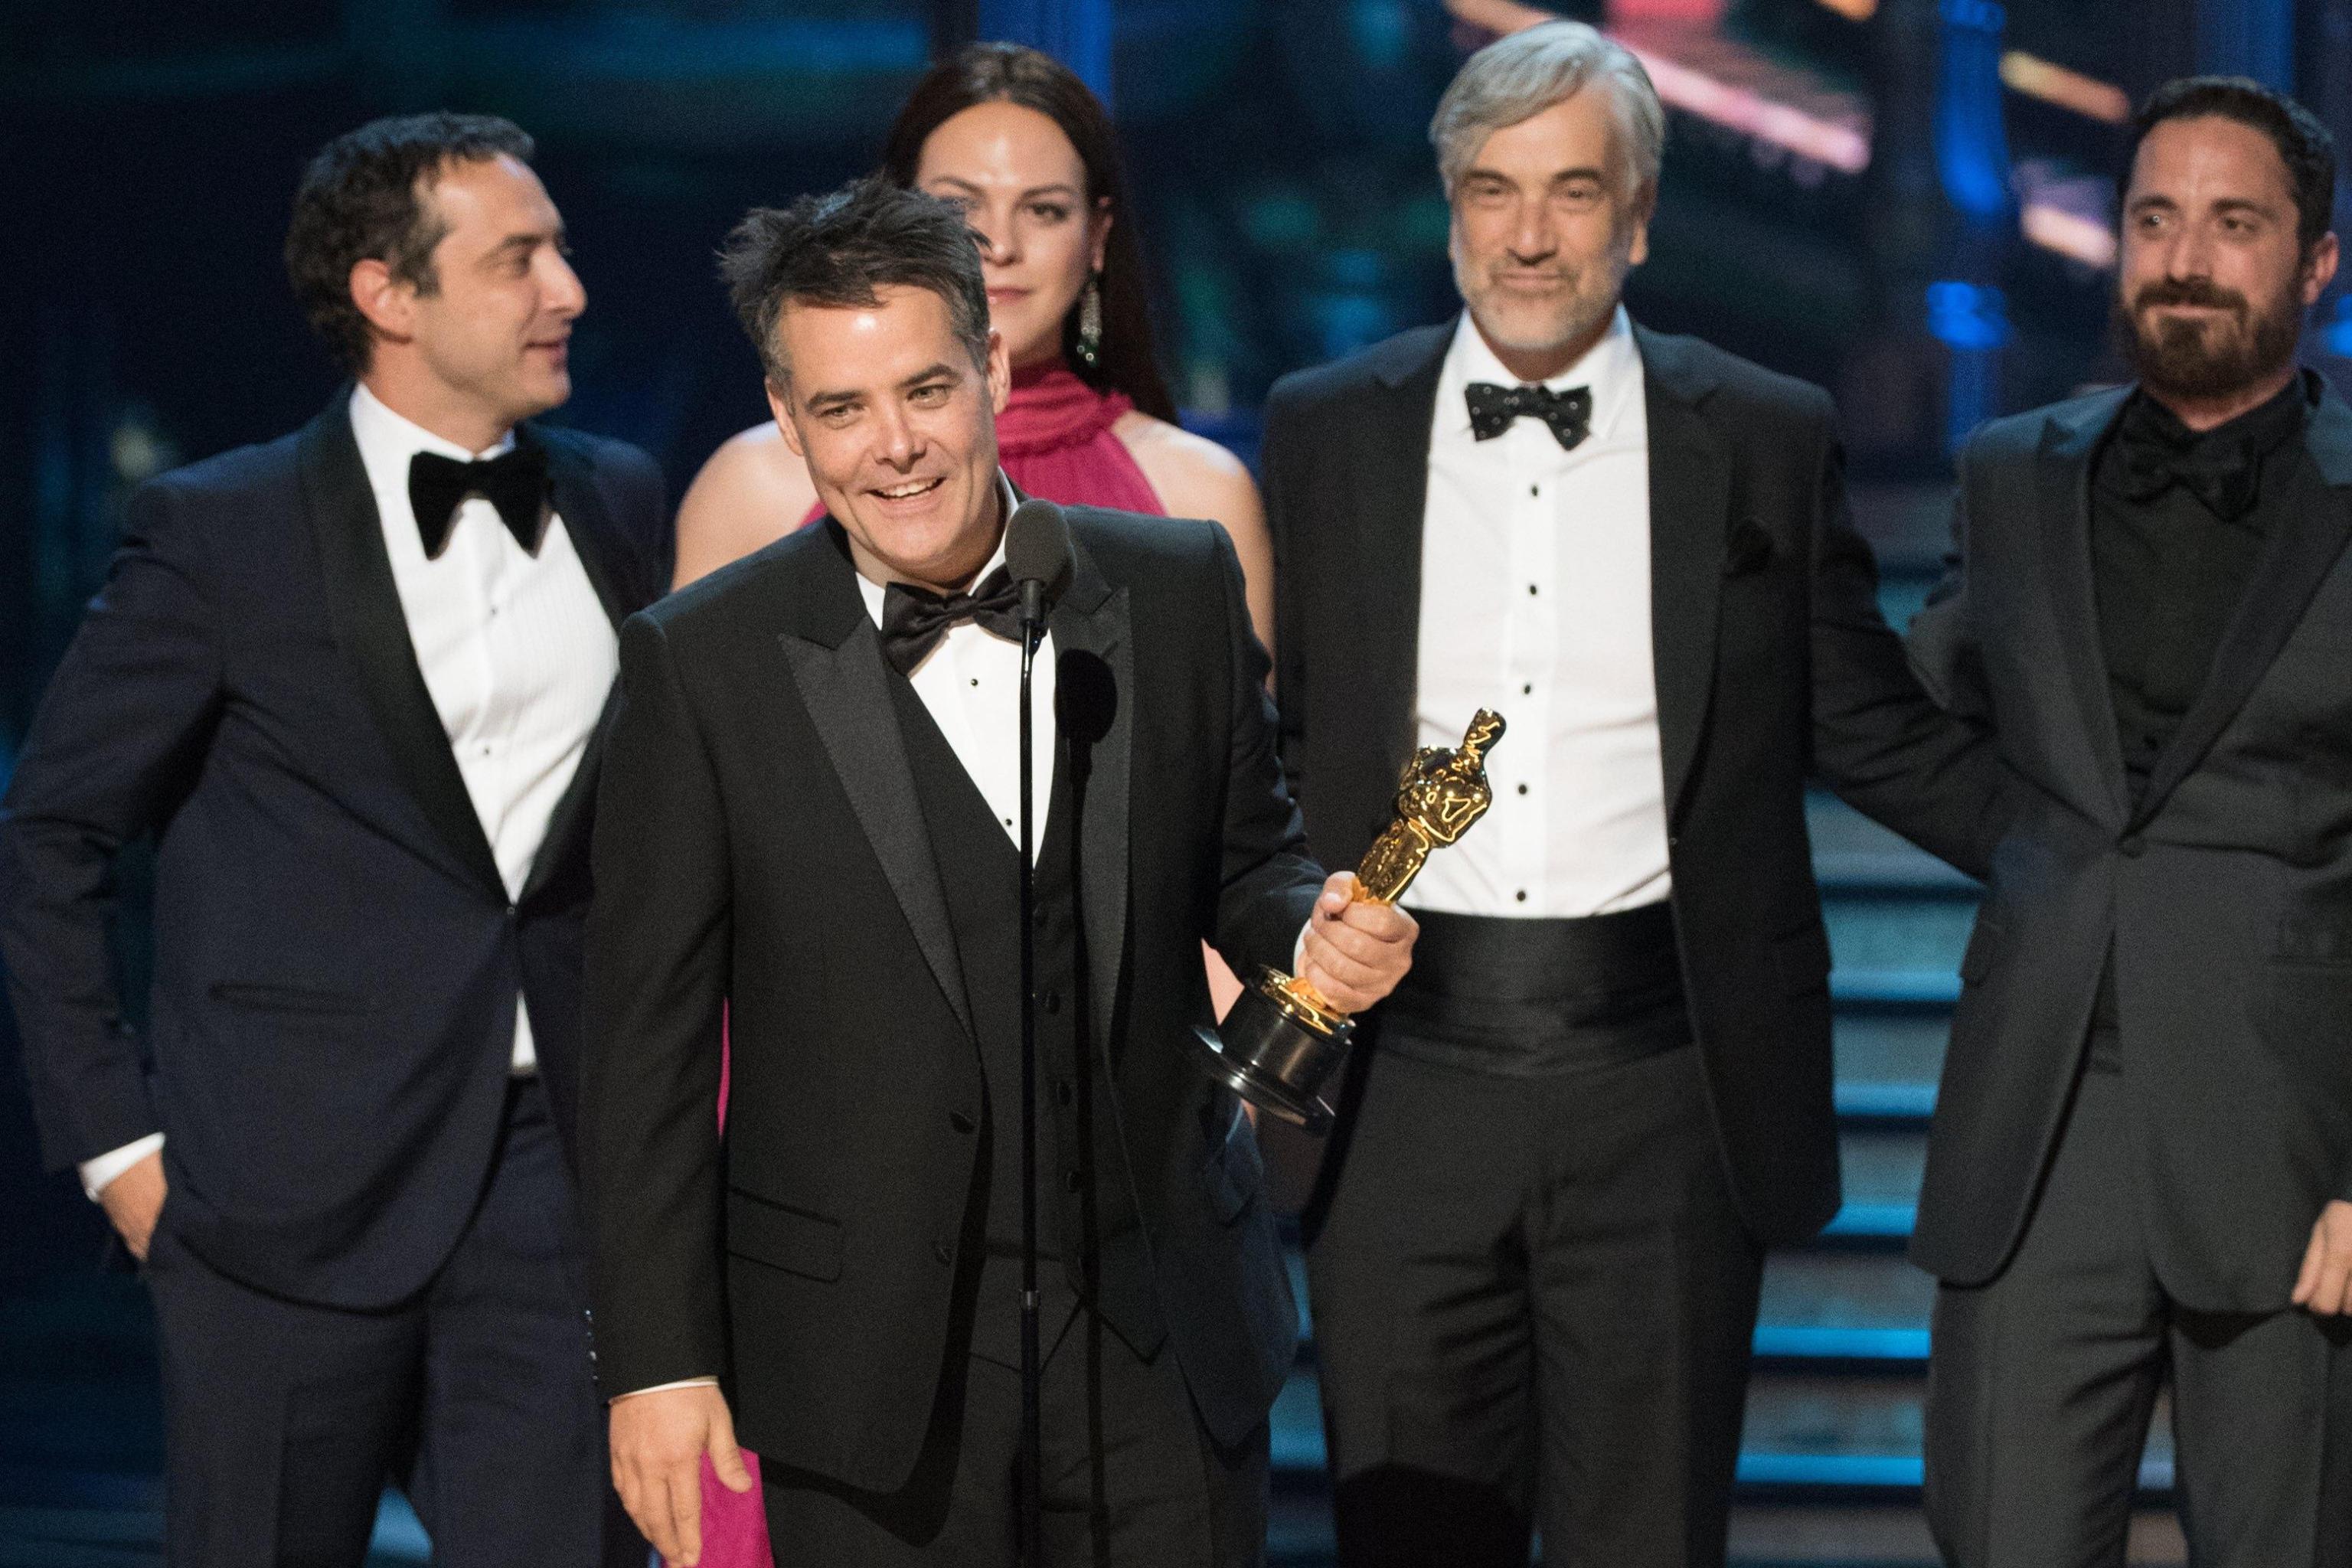 Sebastián Lelio ritira l’Oscar per il miglior film straniero, "A fantastic woman"